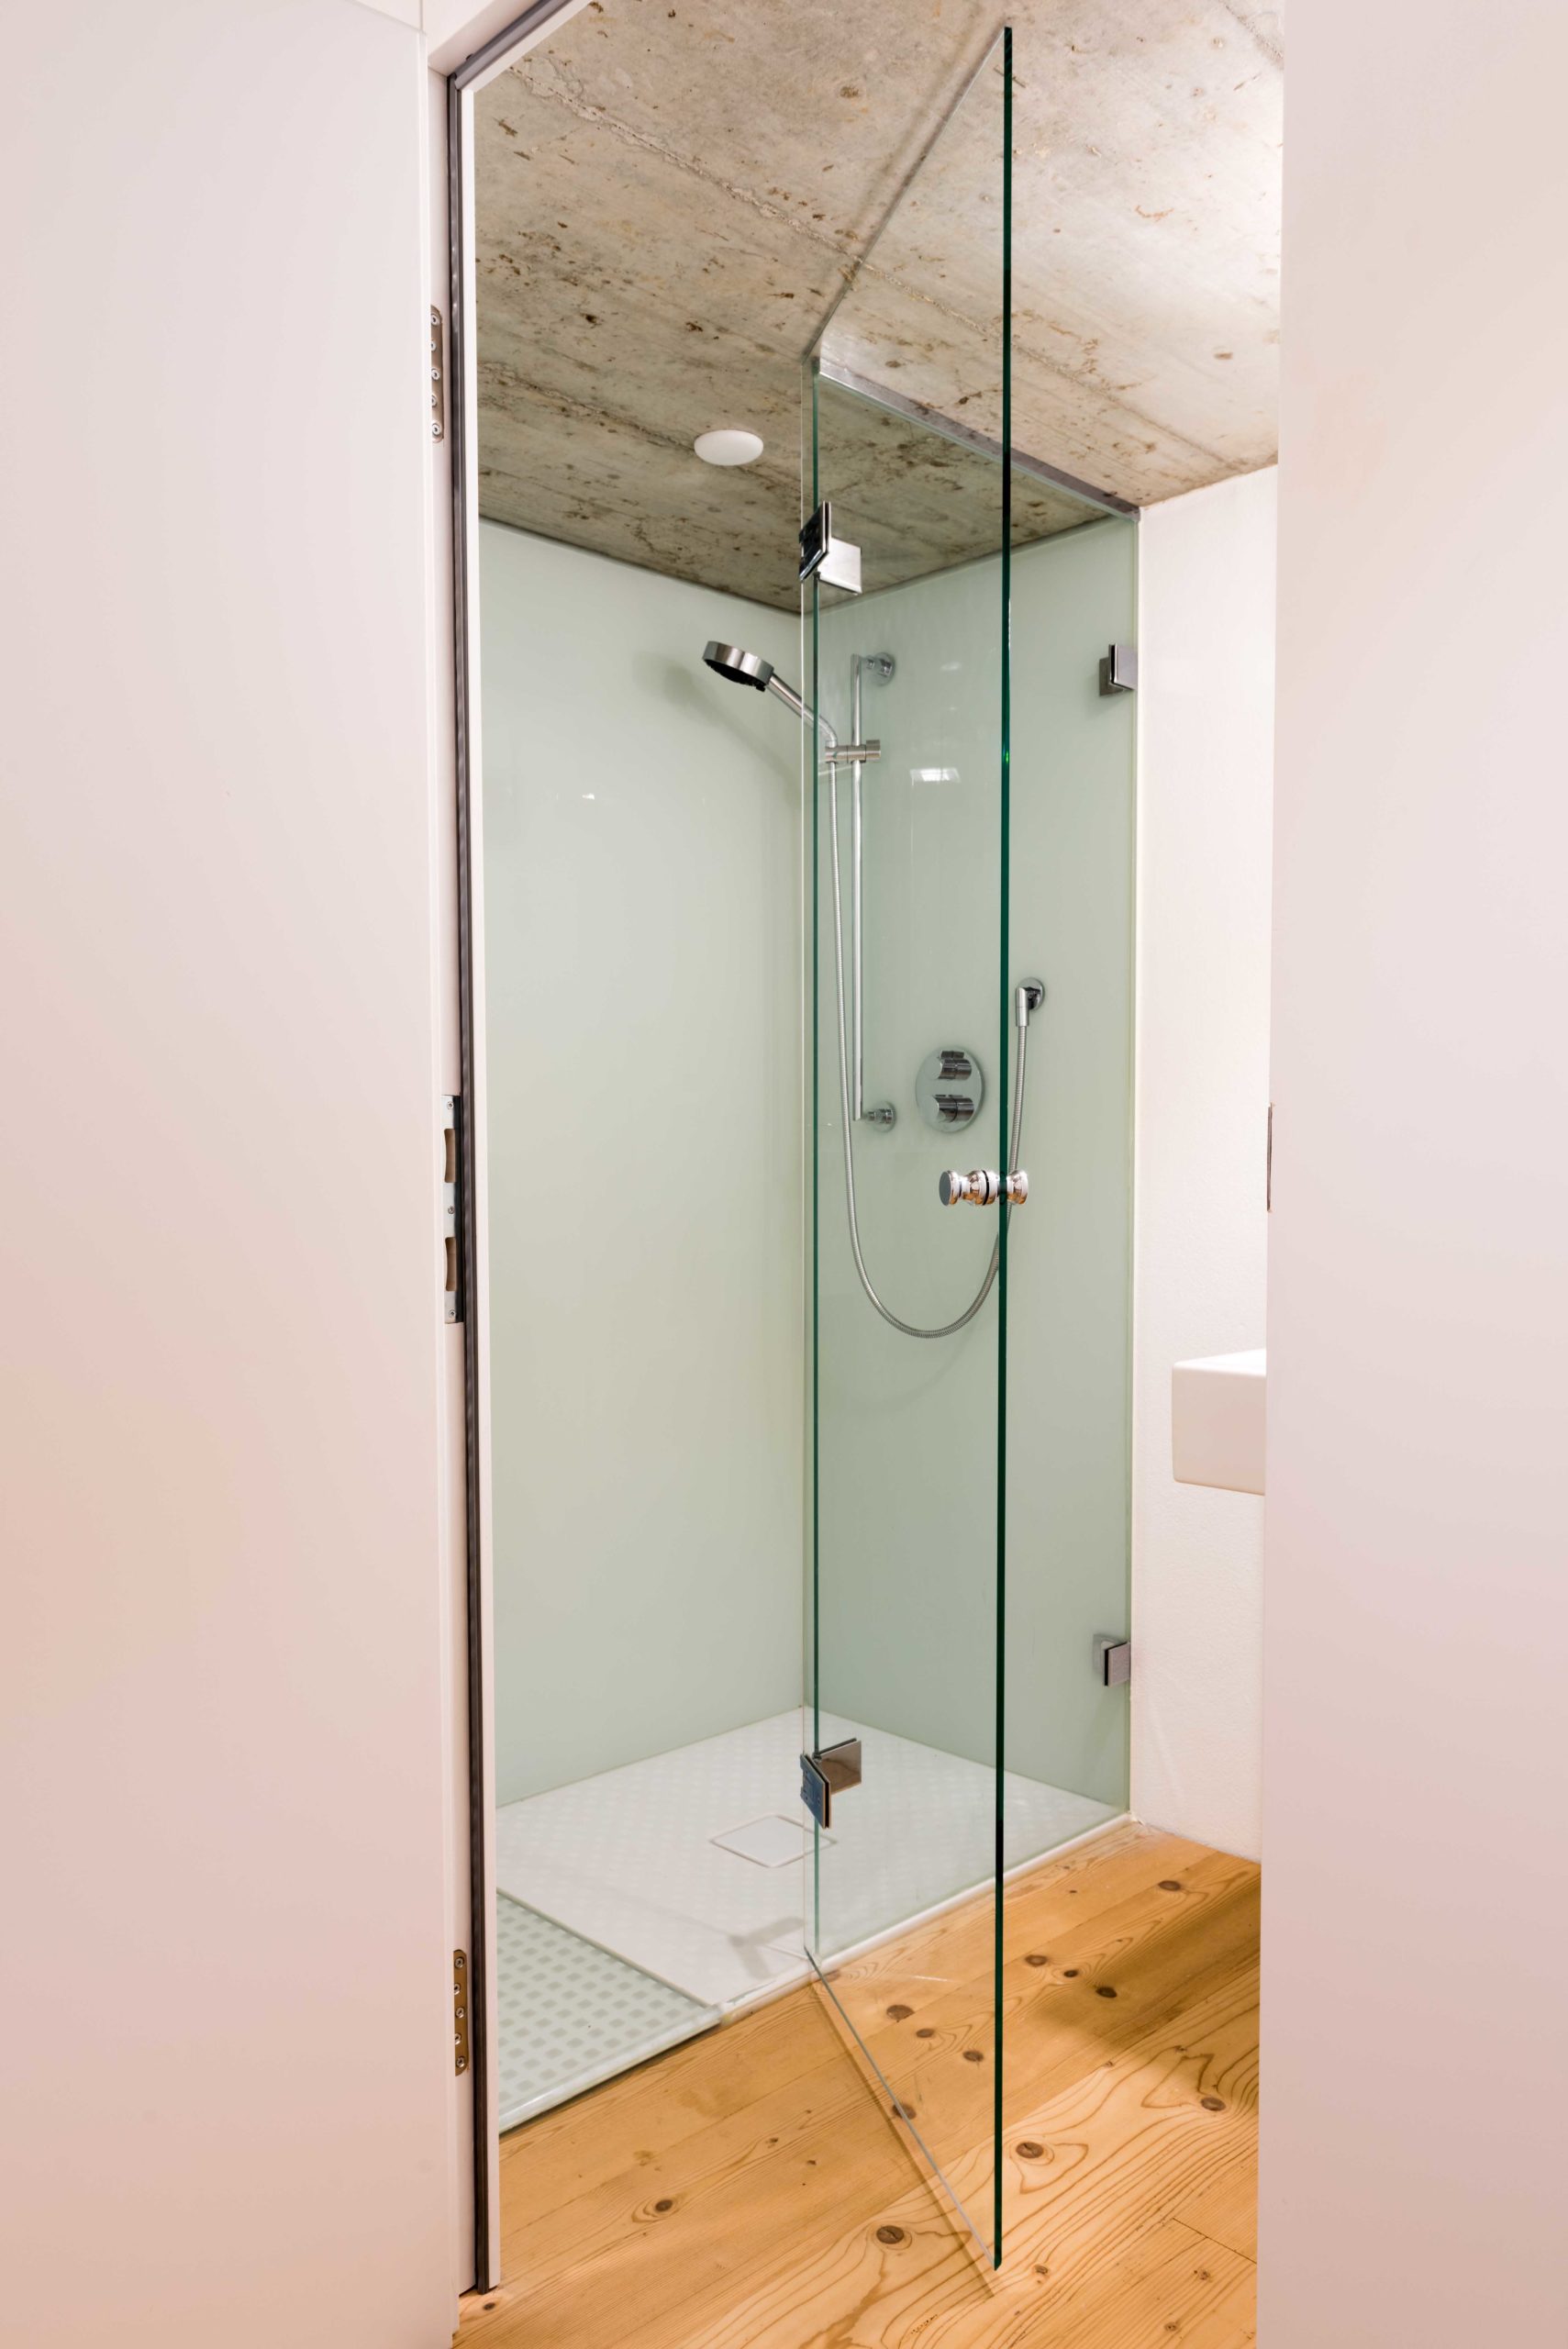 B&W Glasbau Duschverglasung Dusche Bad Spritzschutz